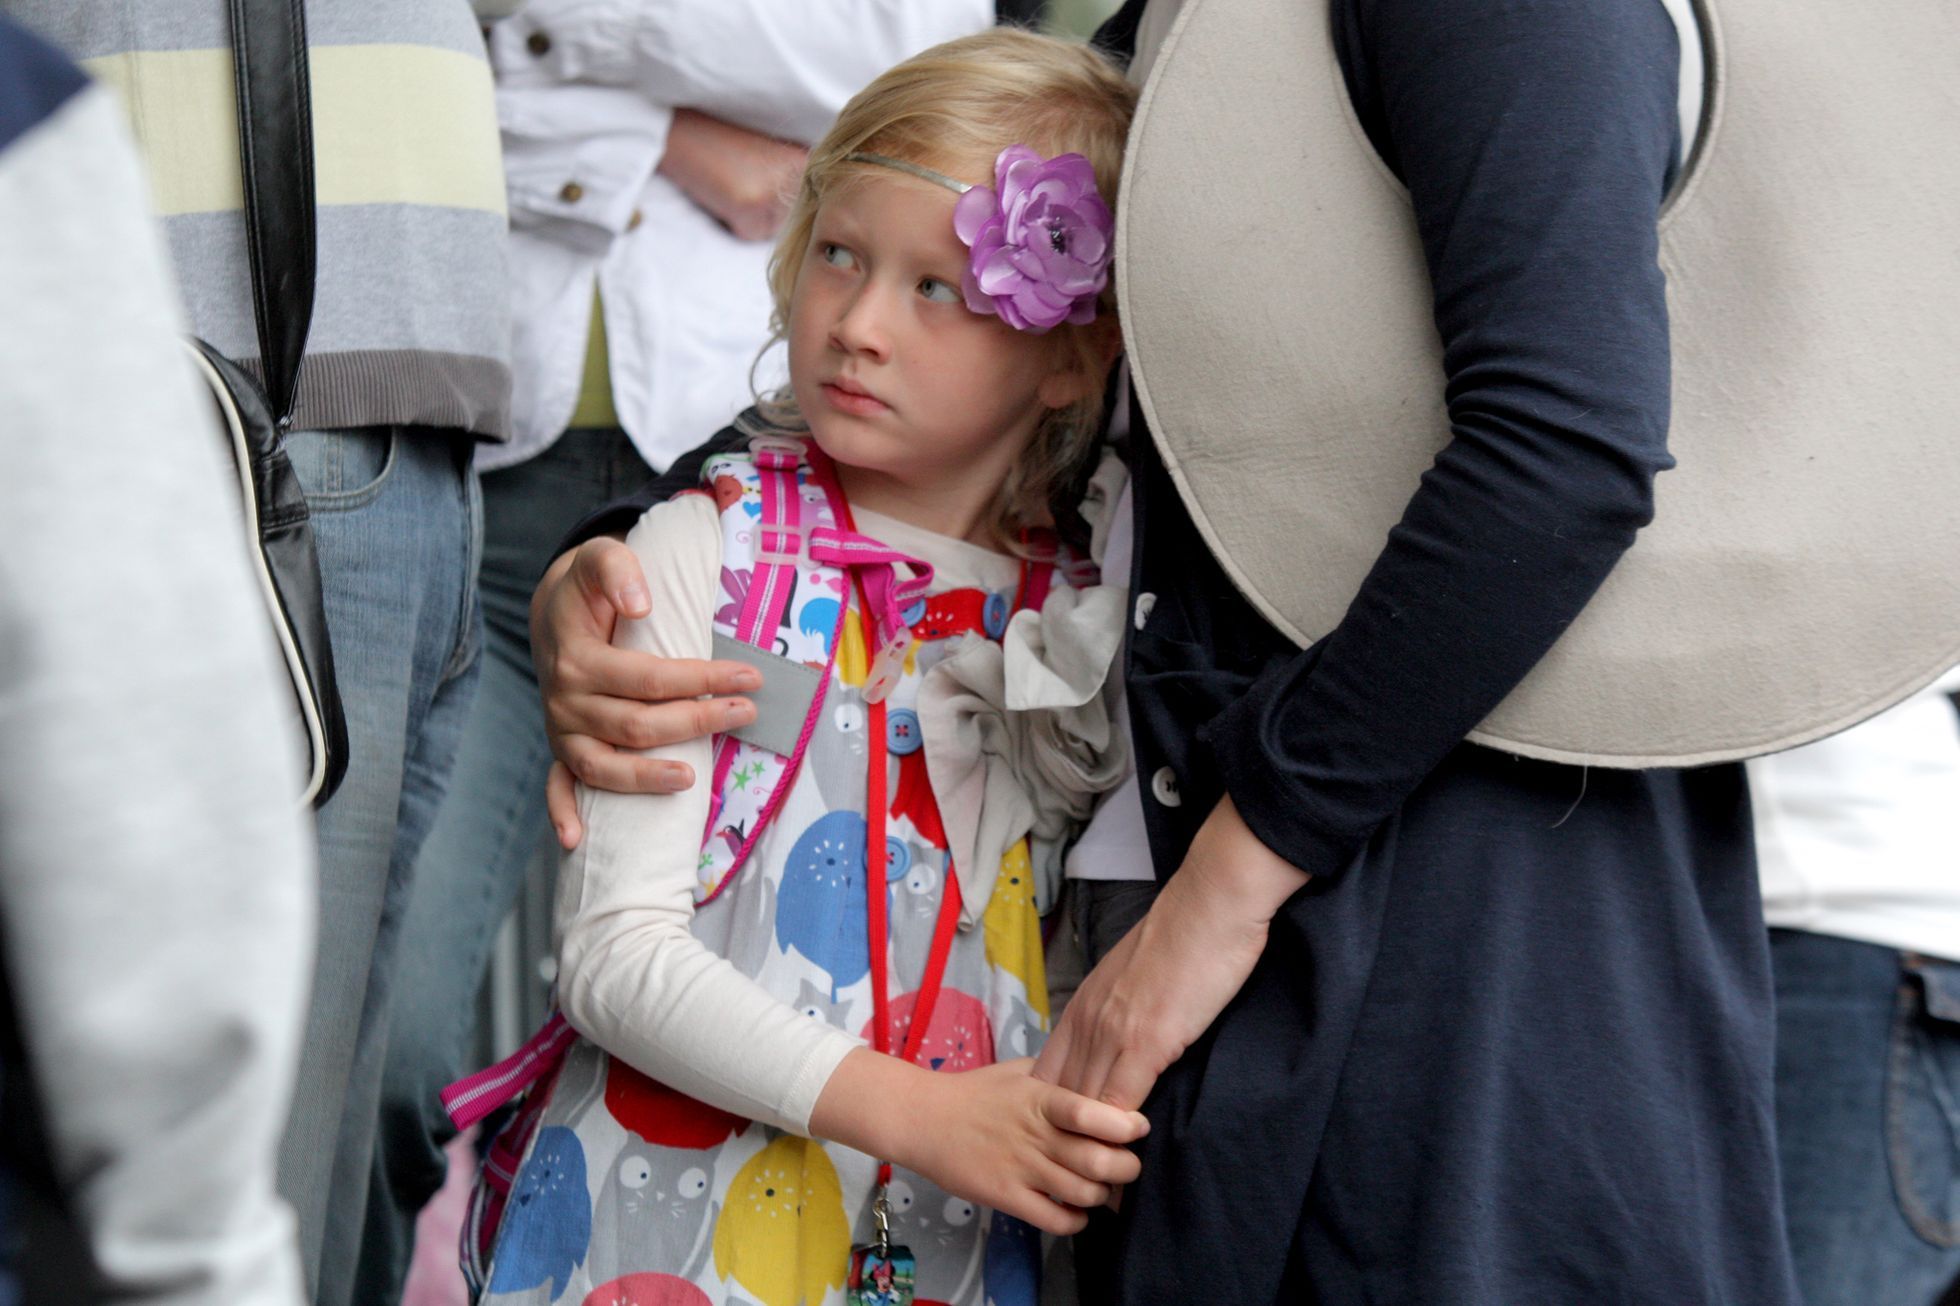 Děti jdou poprvé do školy v Milovicích